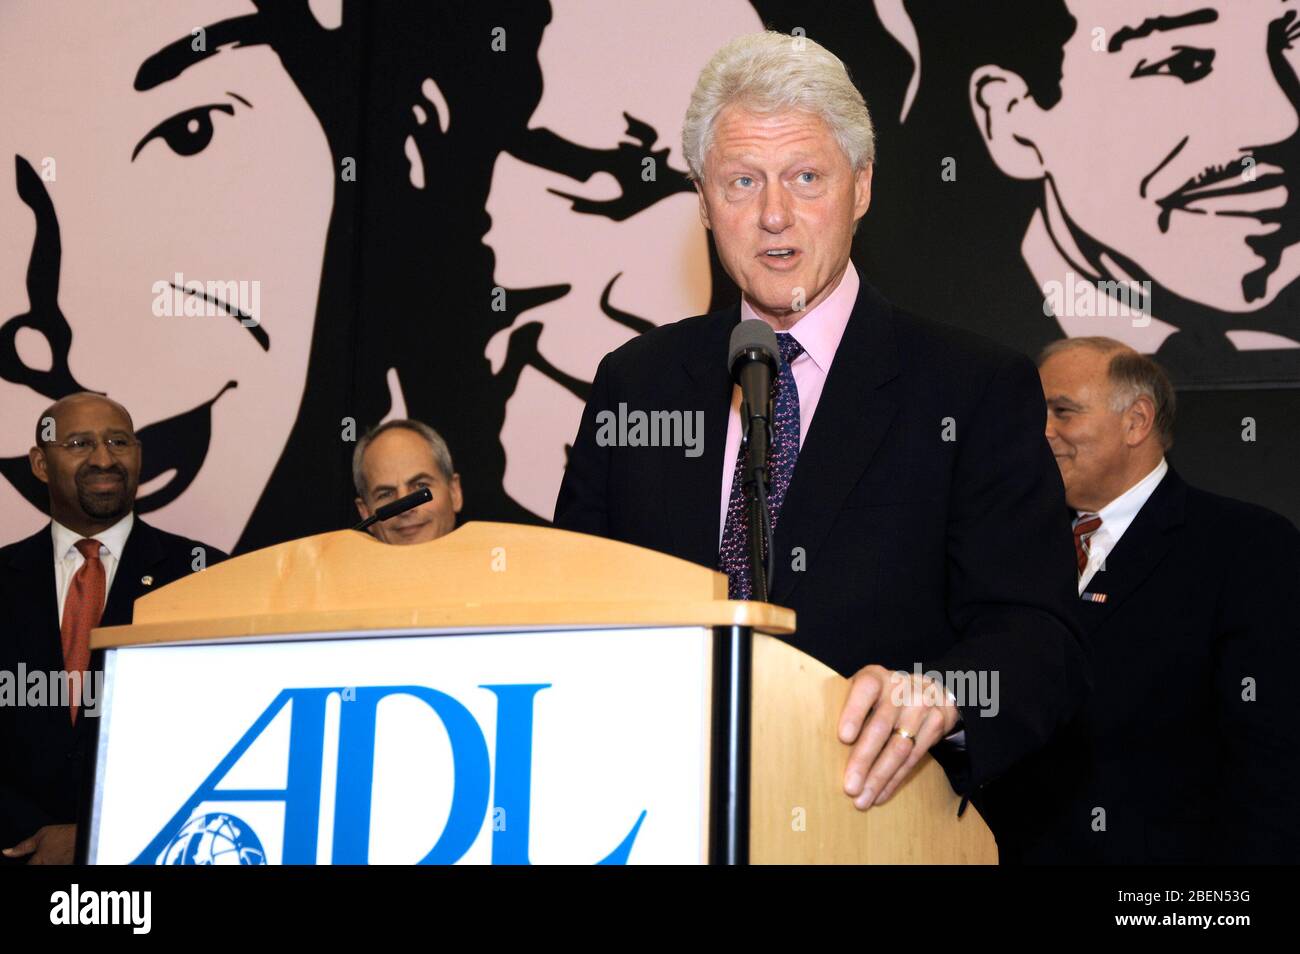 L'ancien président Bill Clinton fait un discours à la Ligue anti-diffamation en l'honneur du maire de Philadelphie, Michael A. Nutter, à Philadelphie, Pennyslvania, le 28 avril 2009. Crédit: Scott Weiner/MediaPunch Banque D'Images